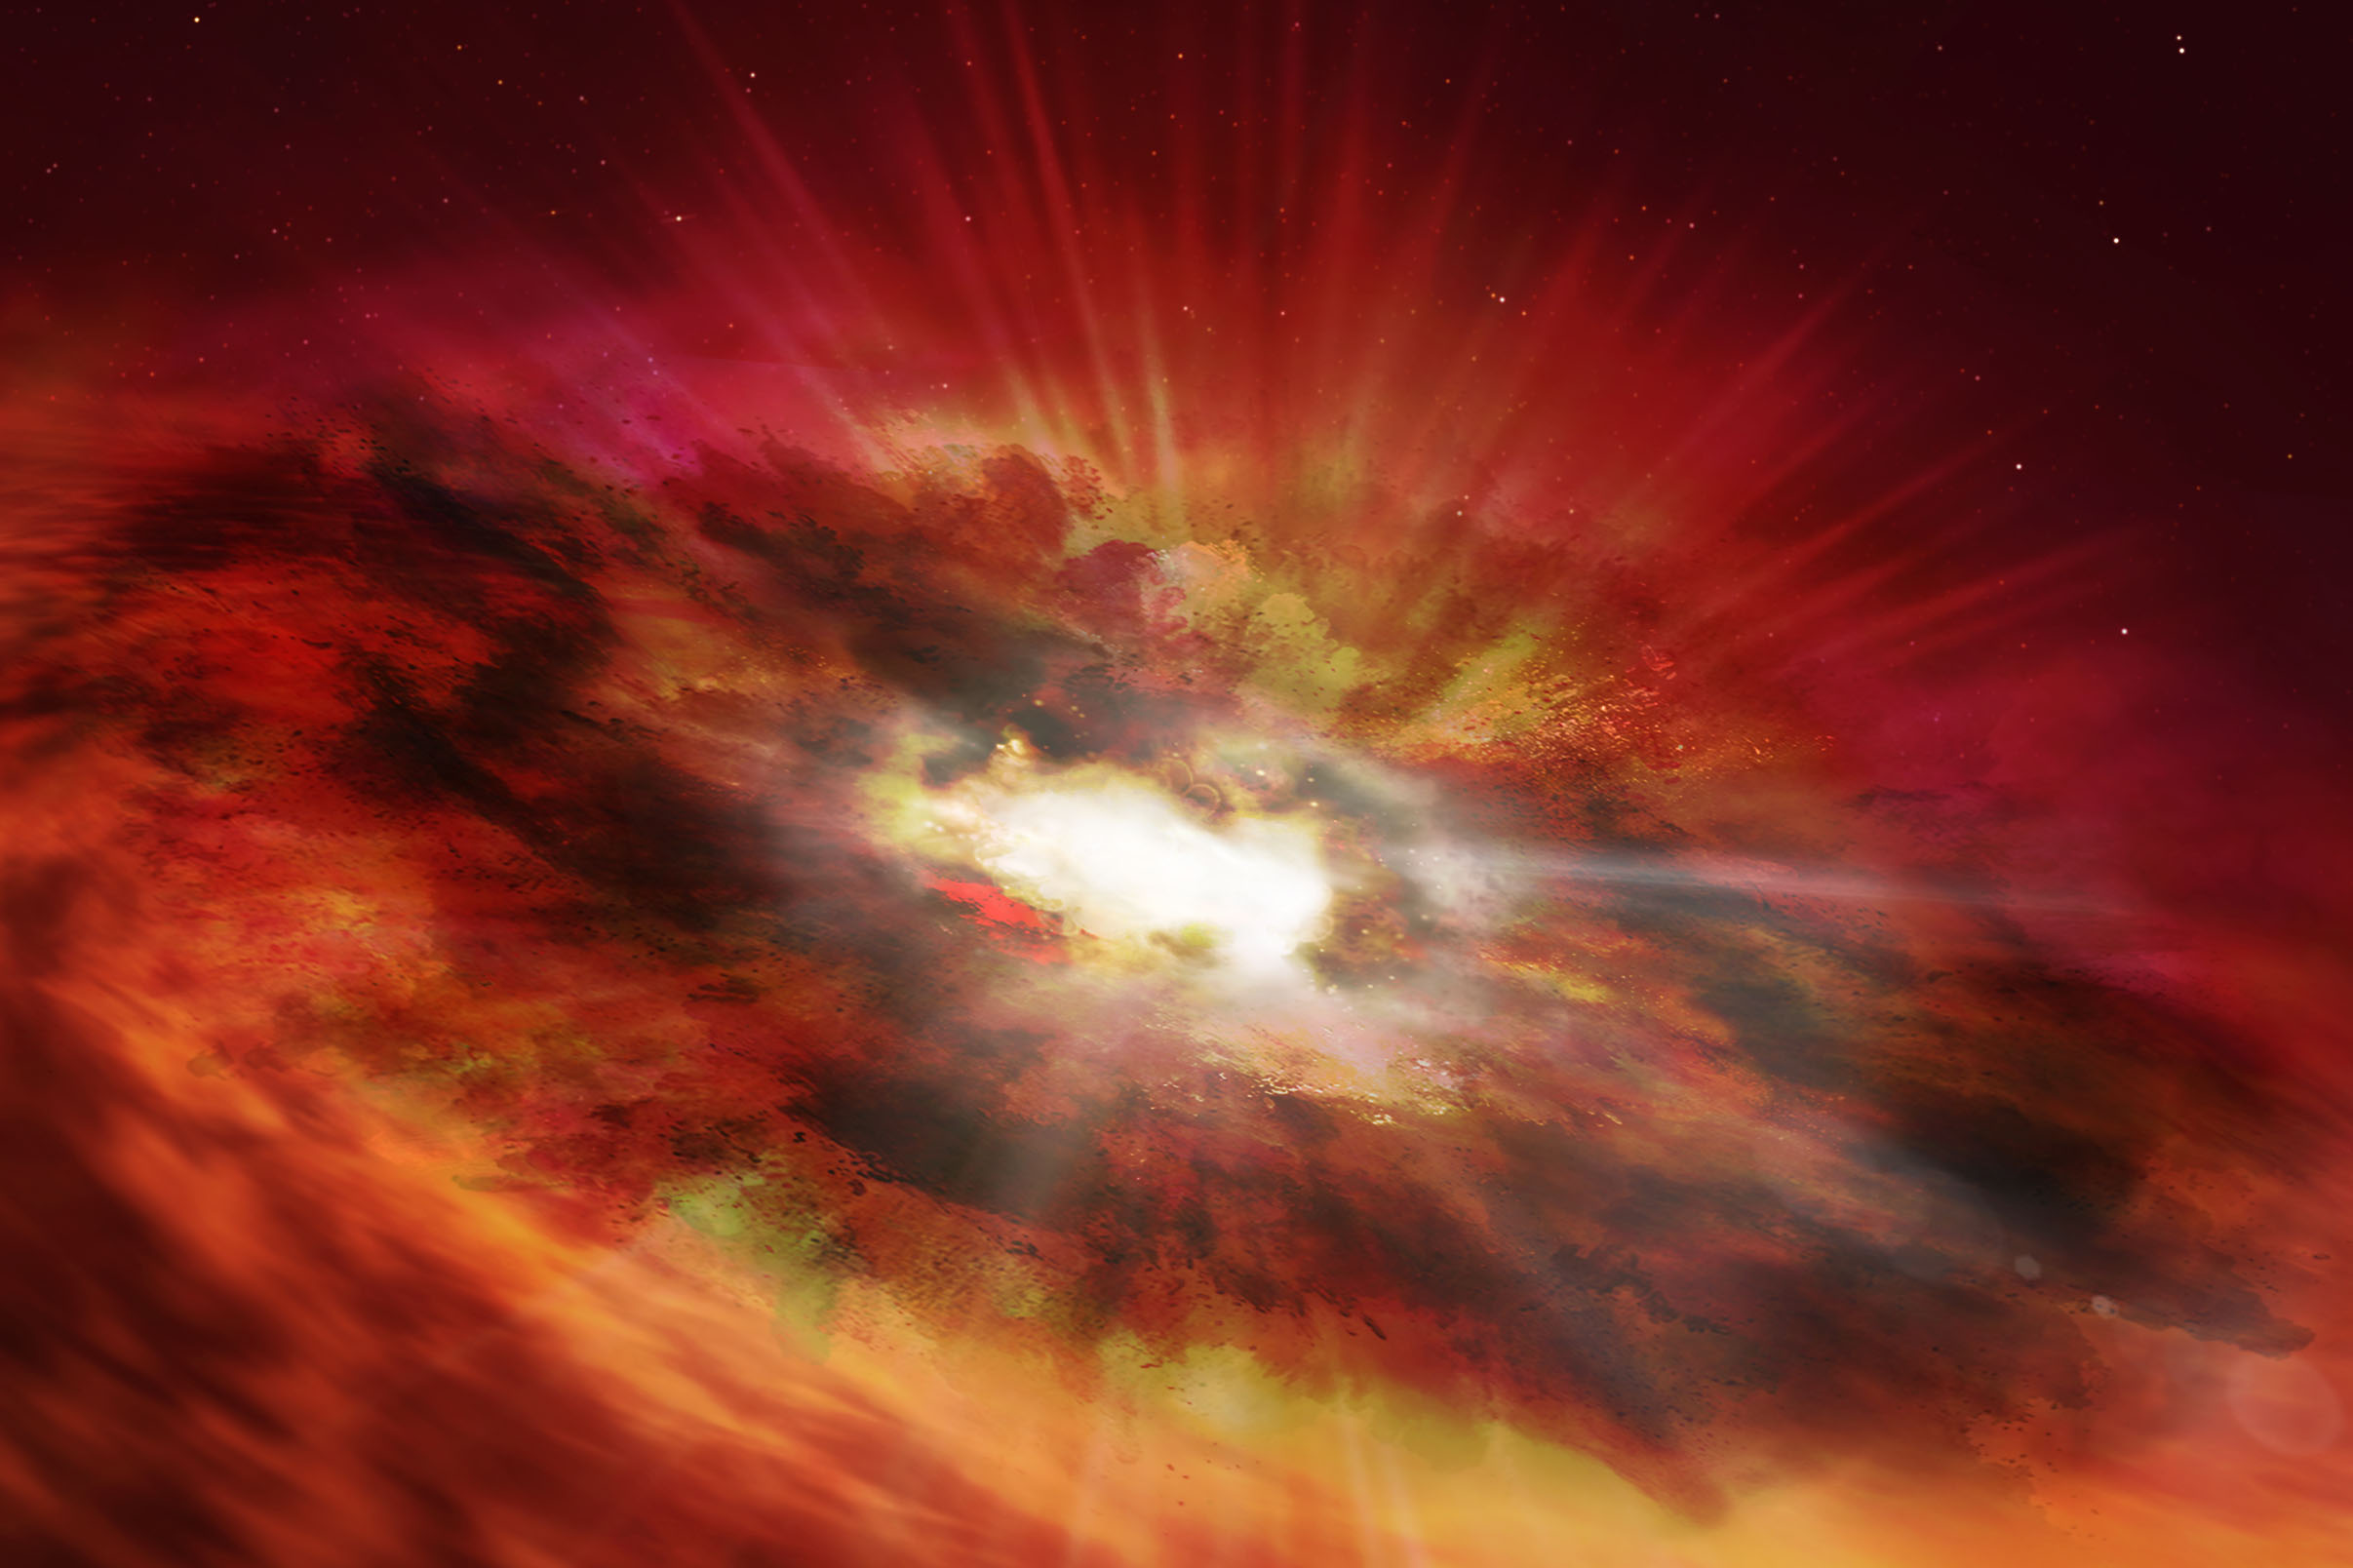 la representación del artista de un agujero negro supermasivo que reside en el núcleo cubierto de polvo de una galaxia 